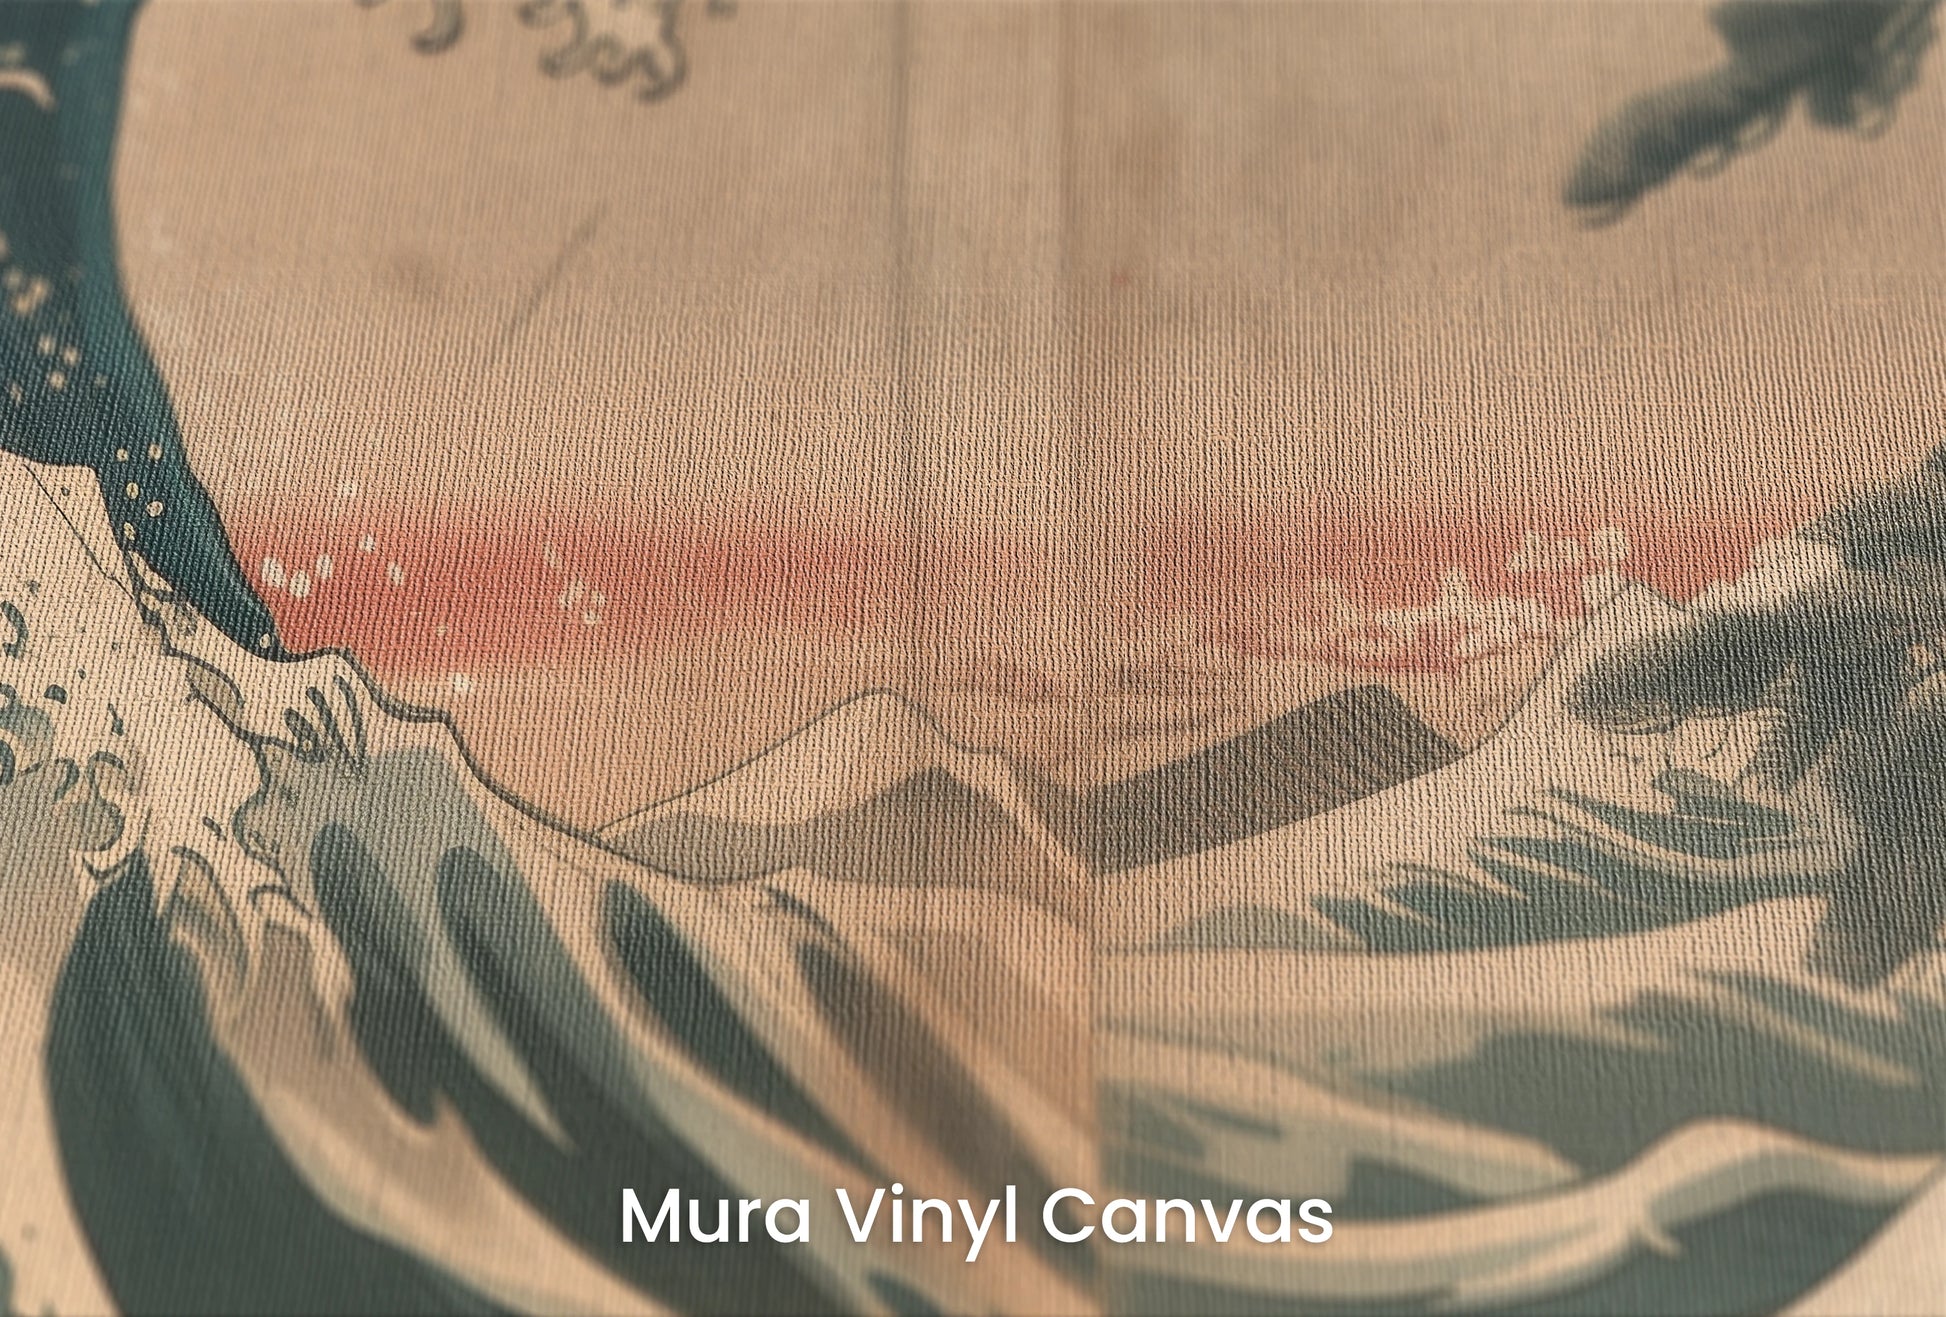 Zbliżenie na artystyczną fototapetę o nazwie Pine Crest Wave na podłożu Mura Vinyl Canvas - faktura naturalnego płótna.